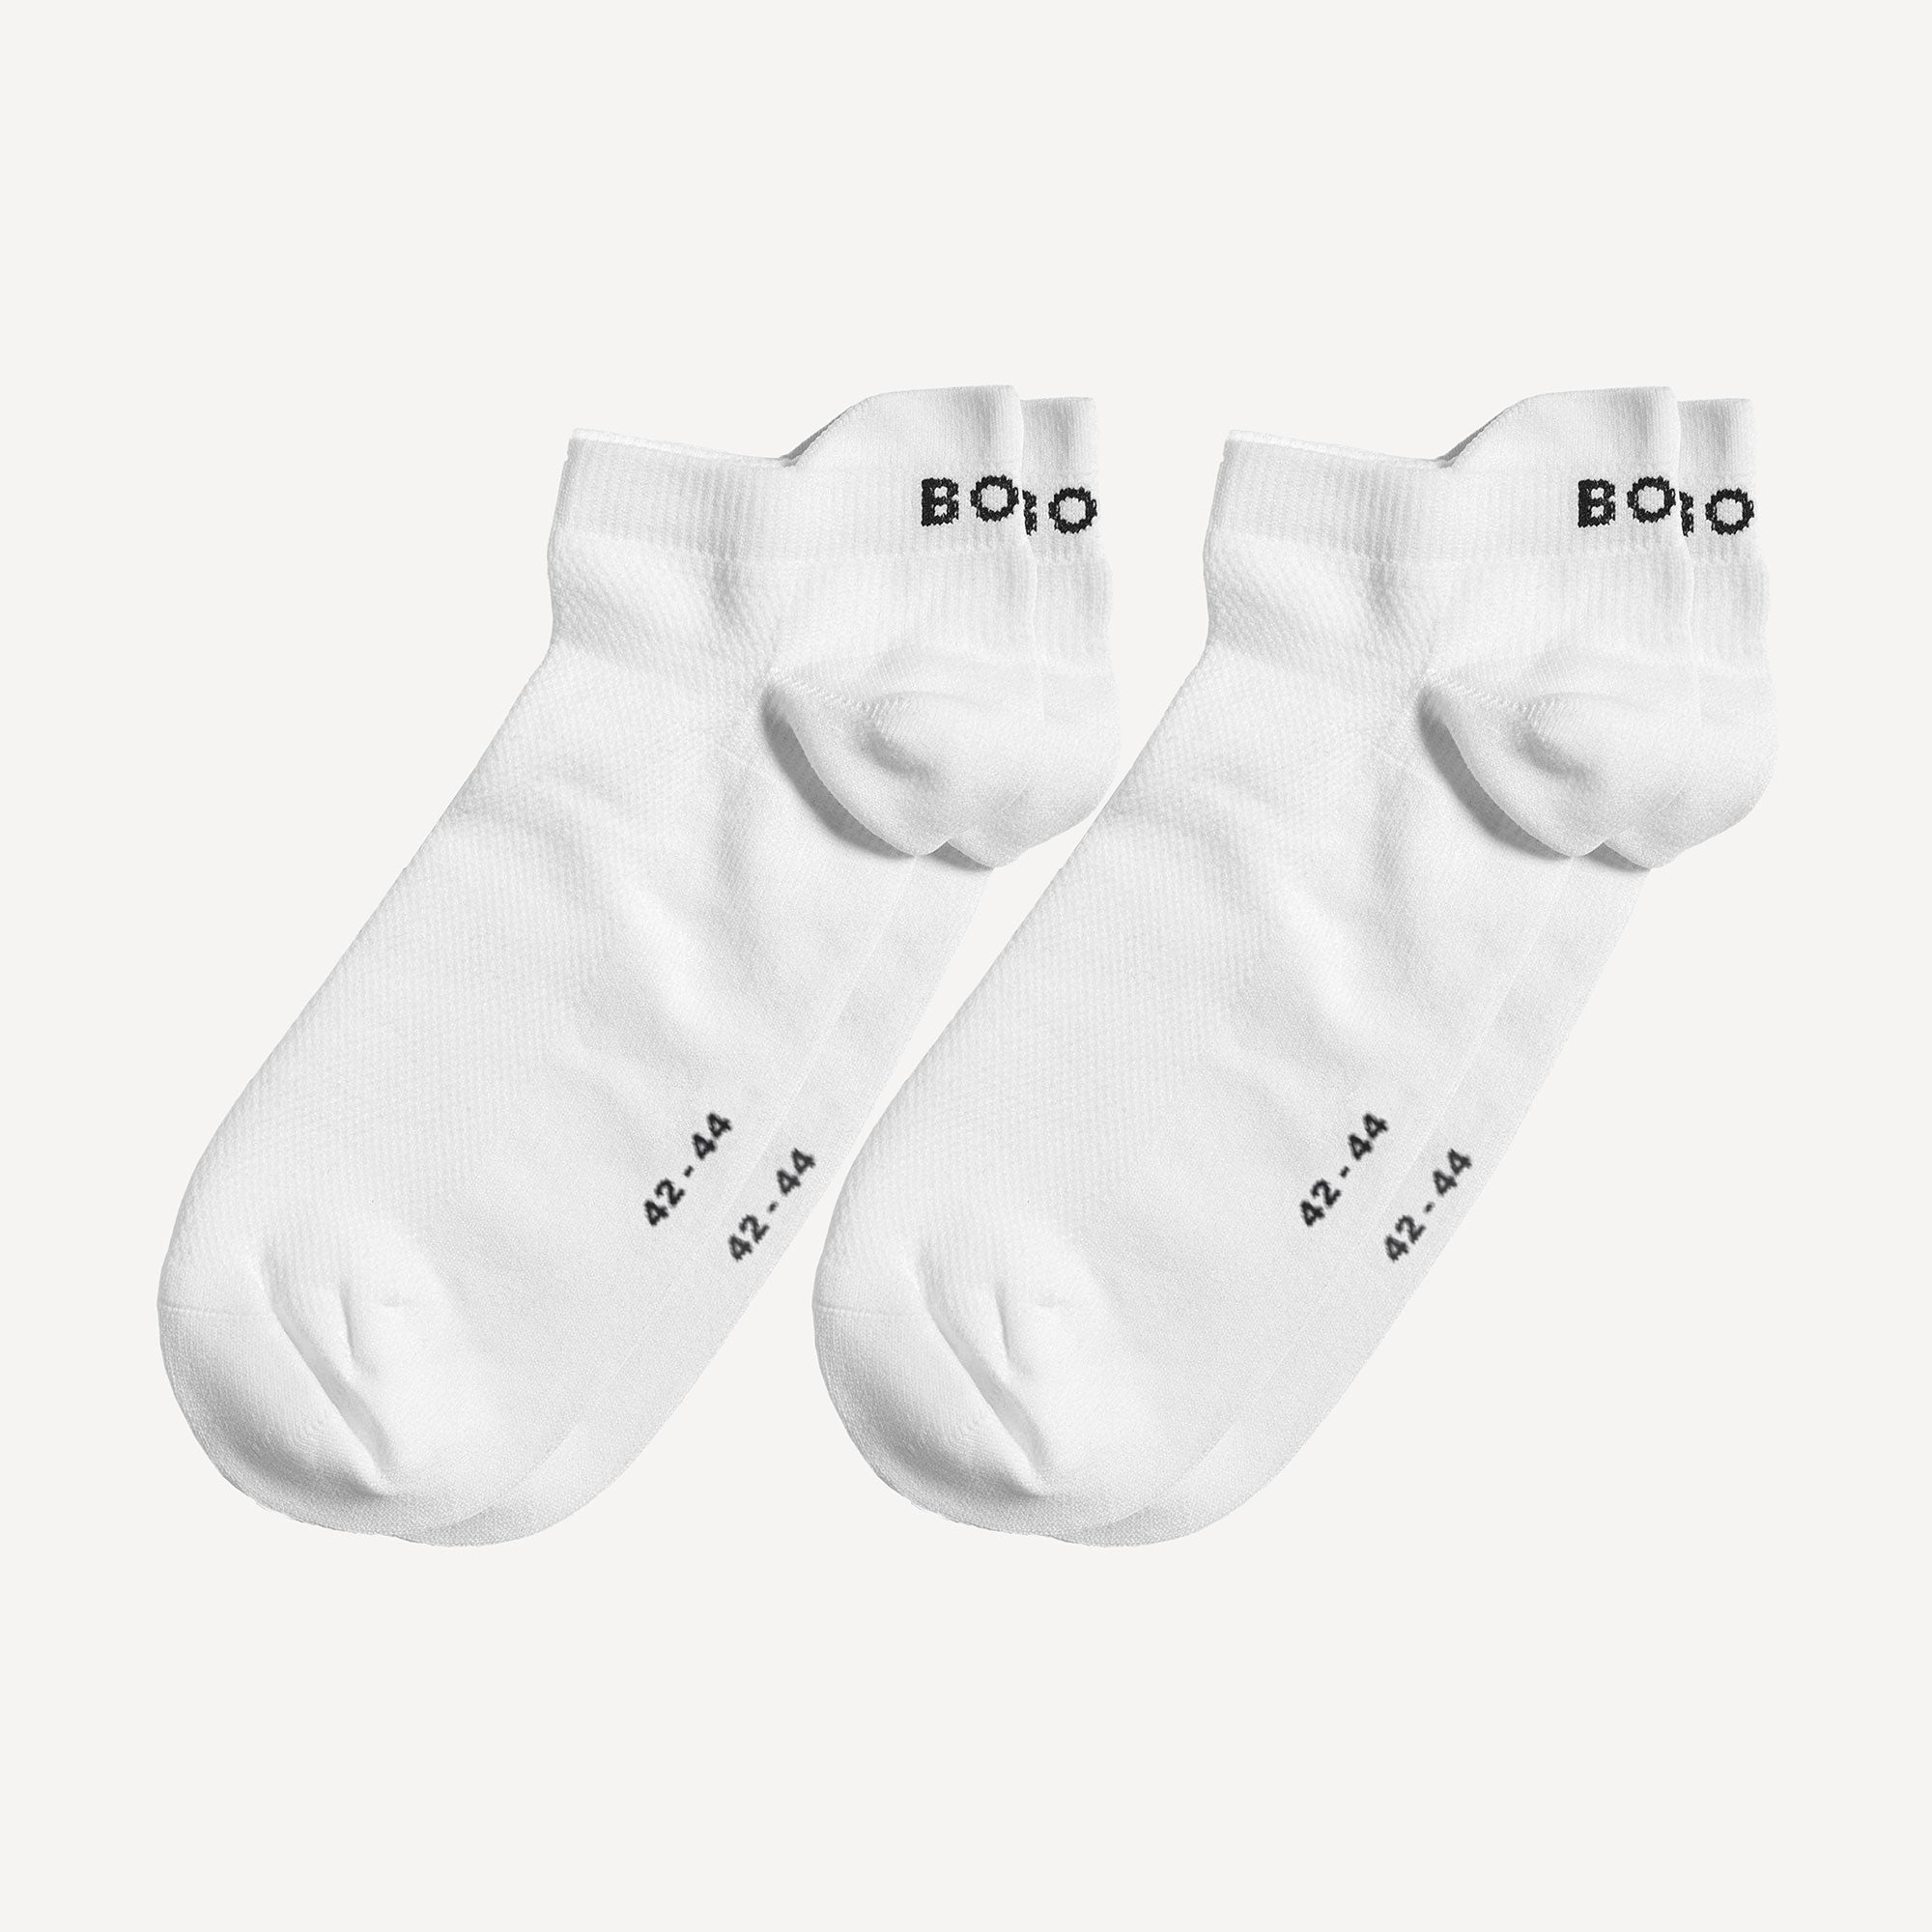 Björn Borg Performance Steps Socks 2 Pair - White (1)